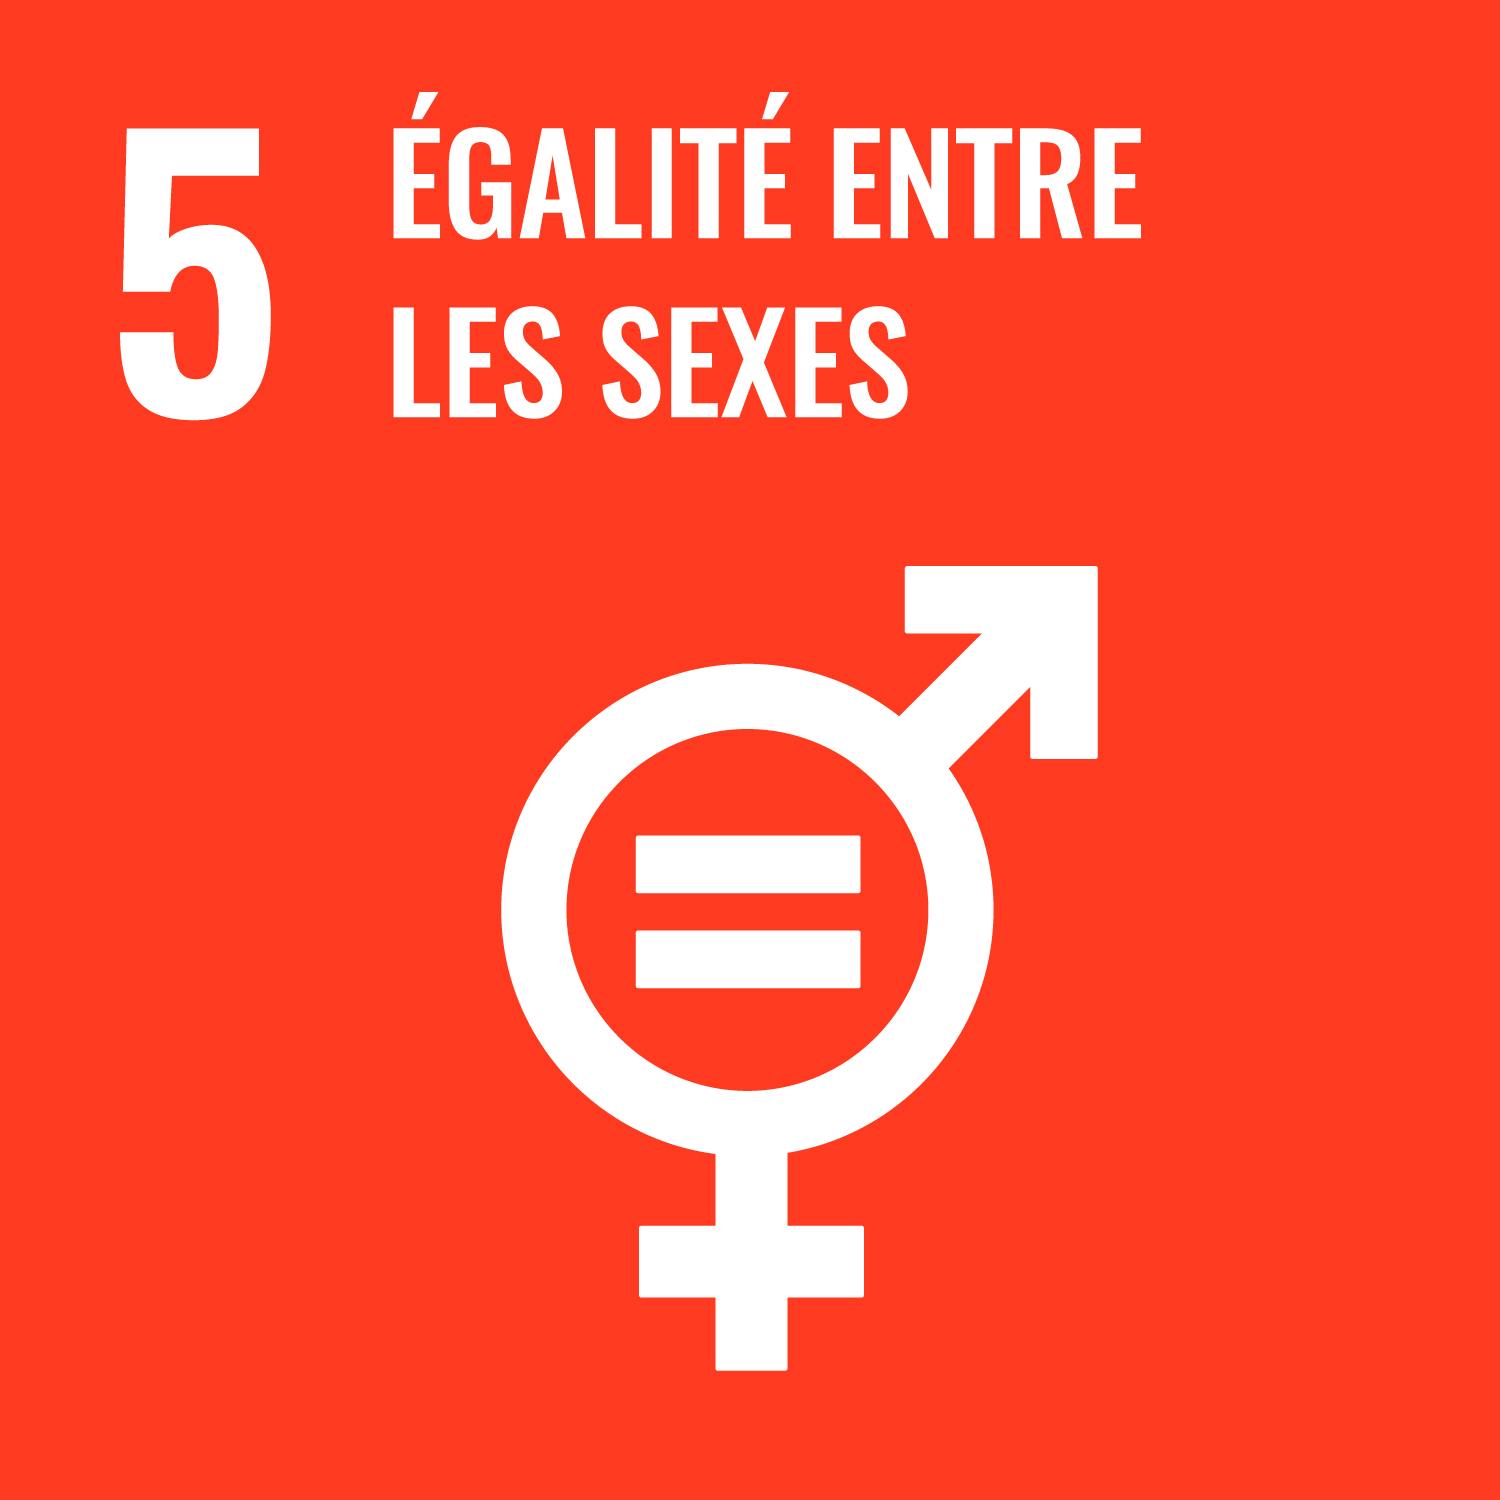 5 - Égalité entre les sexes